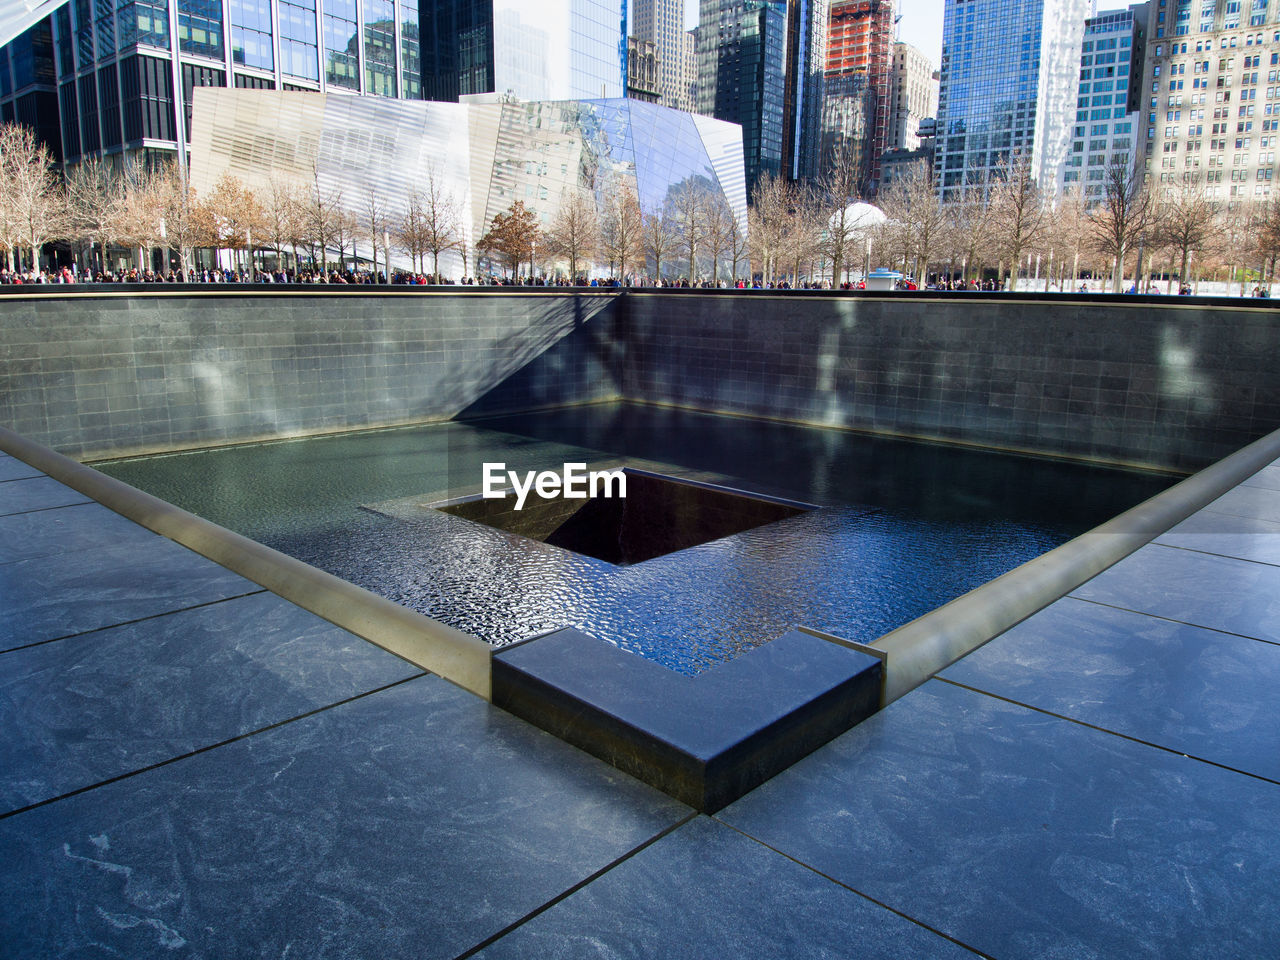 Corner view of the 9/11 memorial